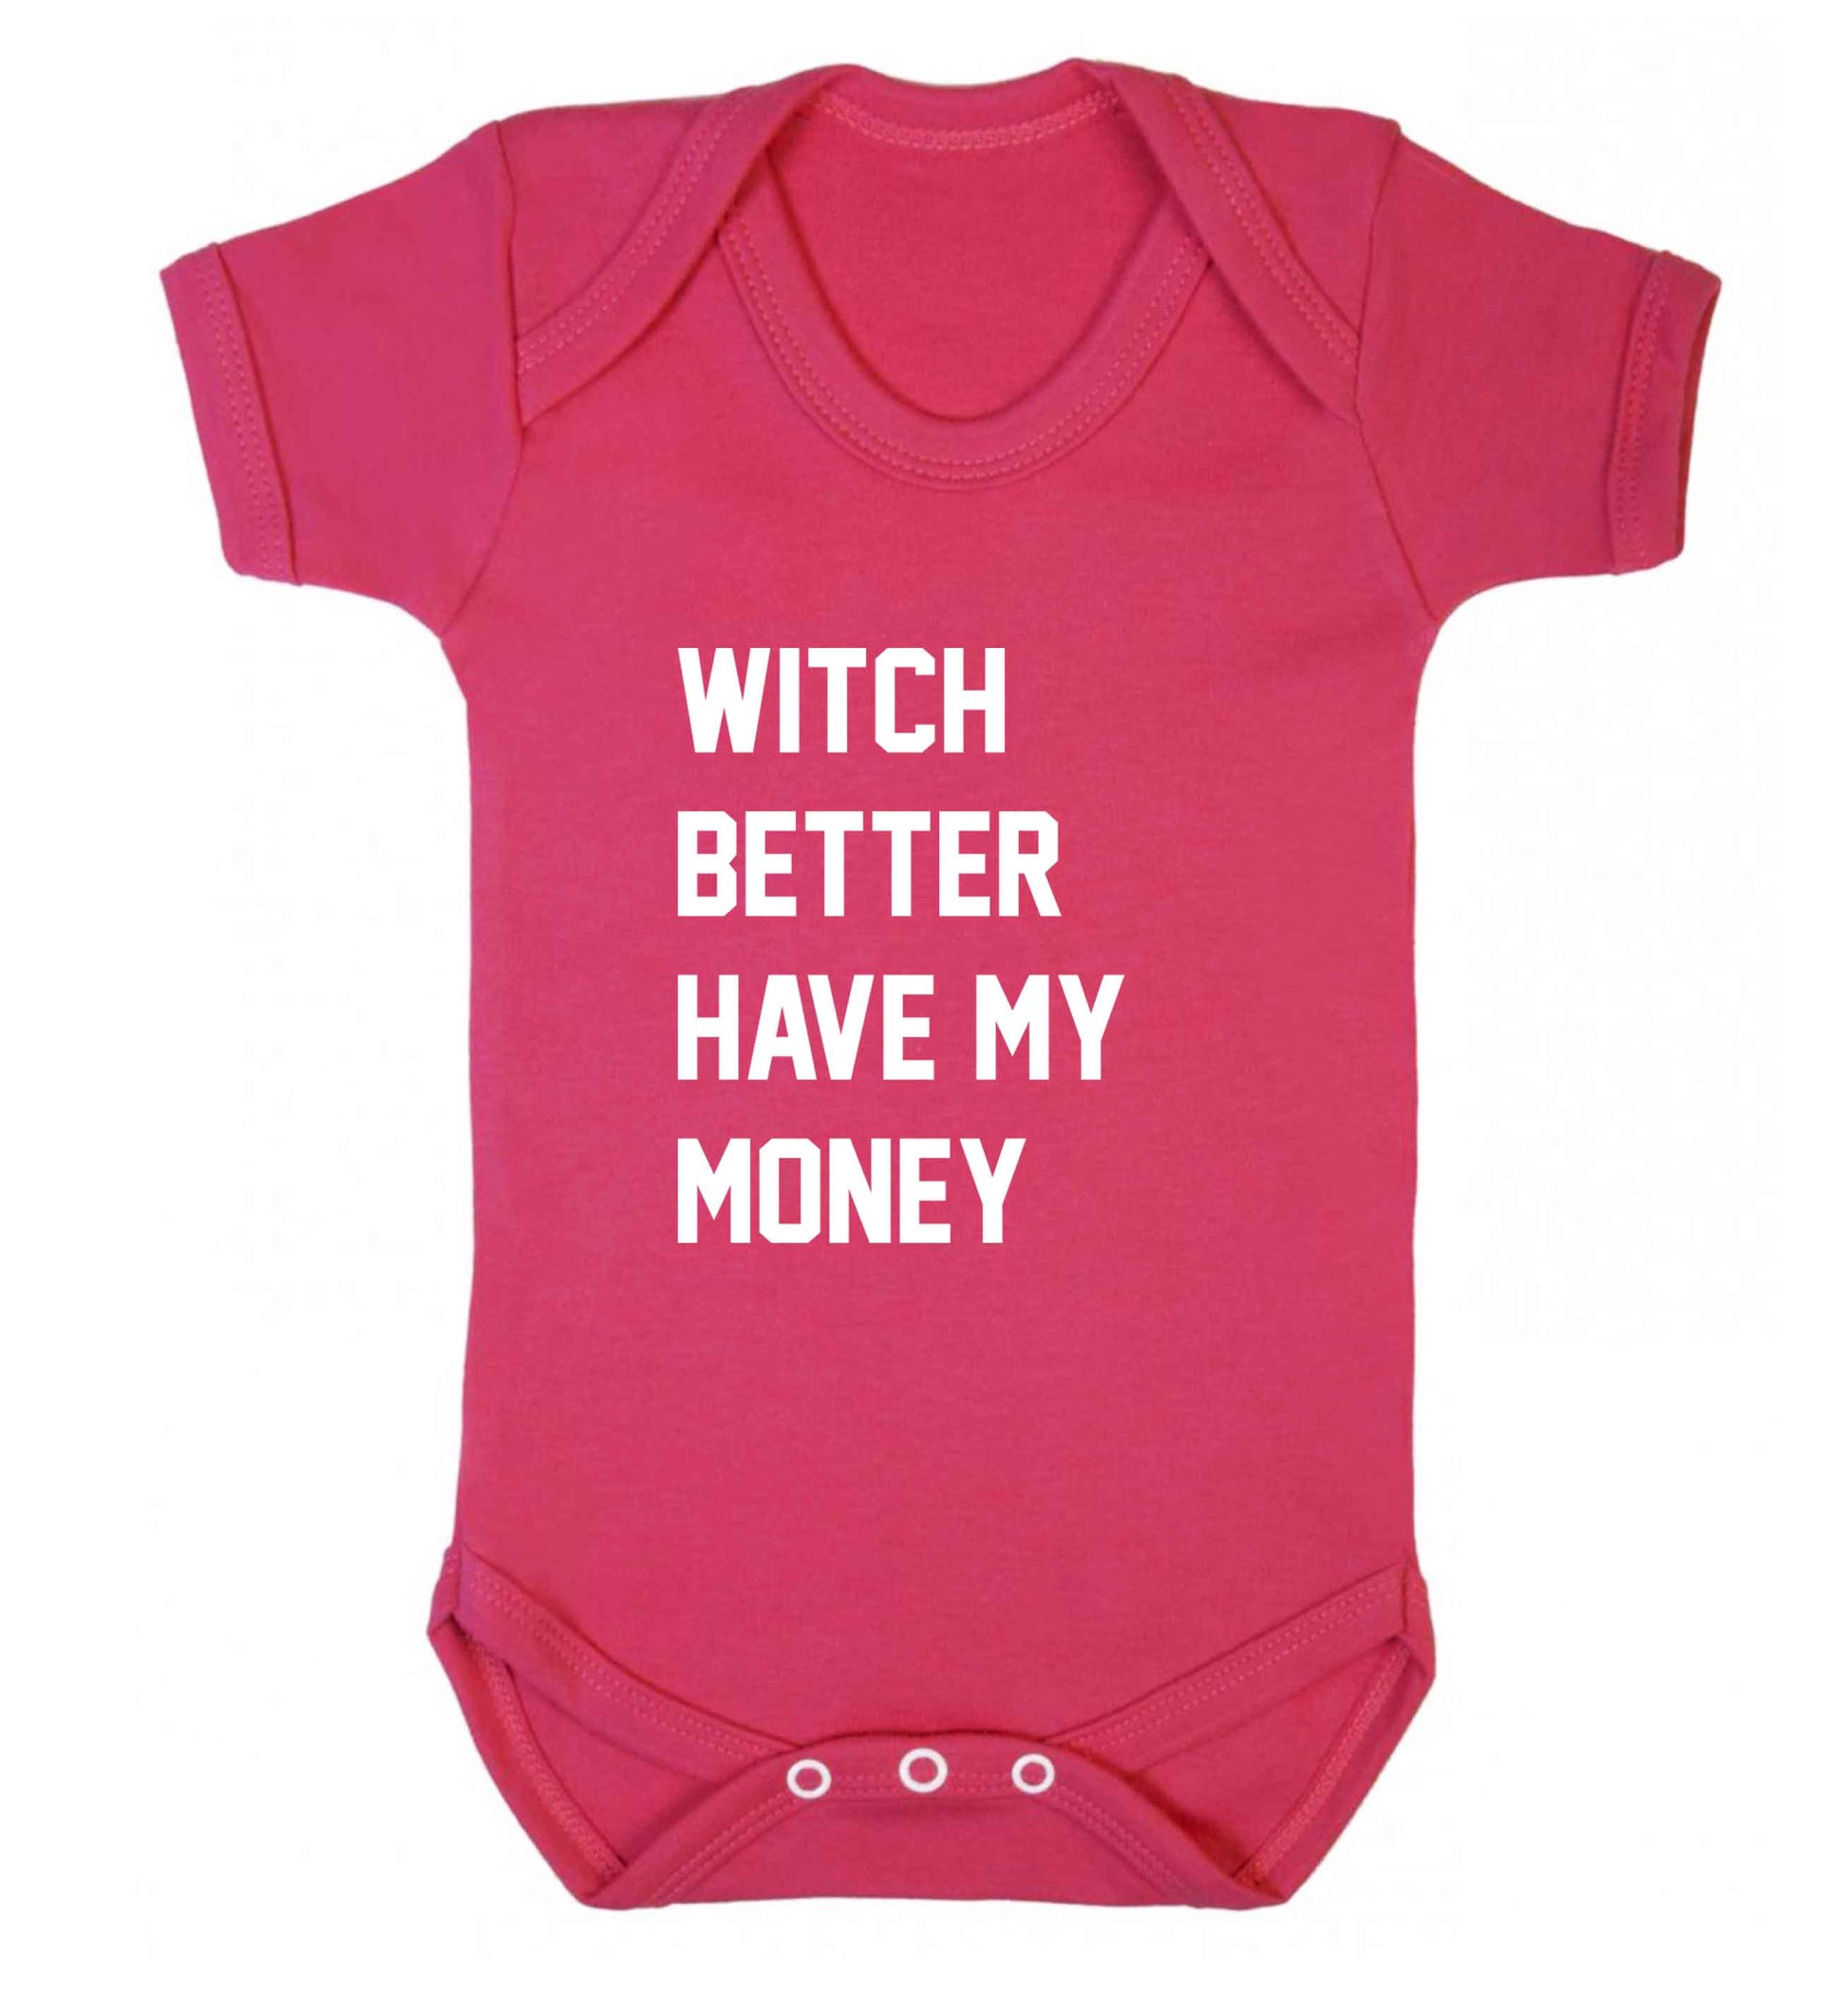 Witch better have my money baby vest dark pink 18-24 months